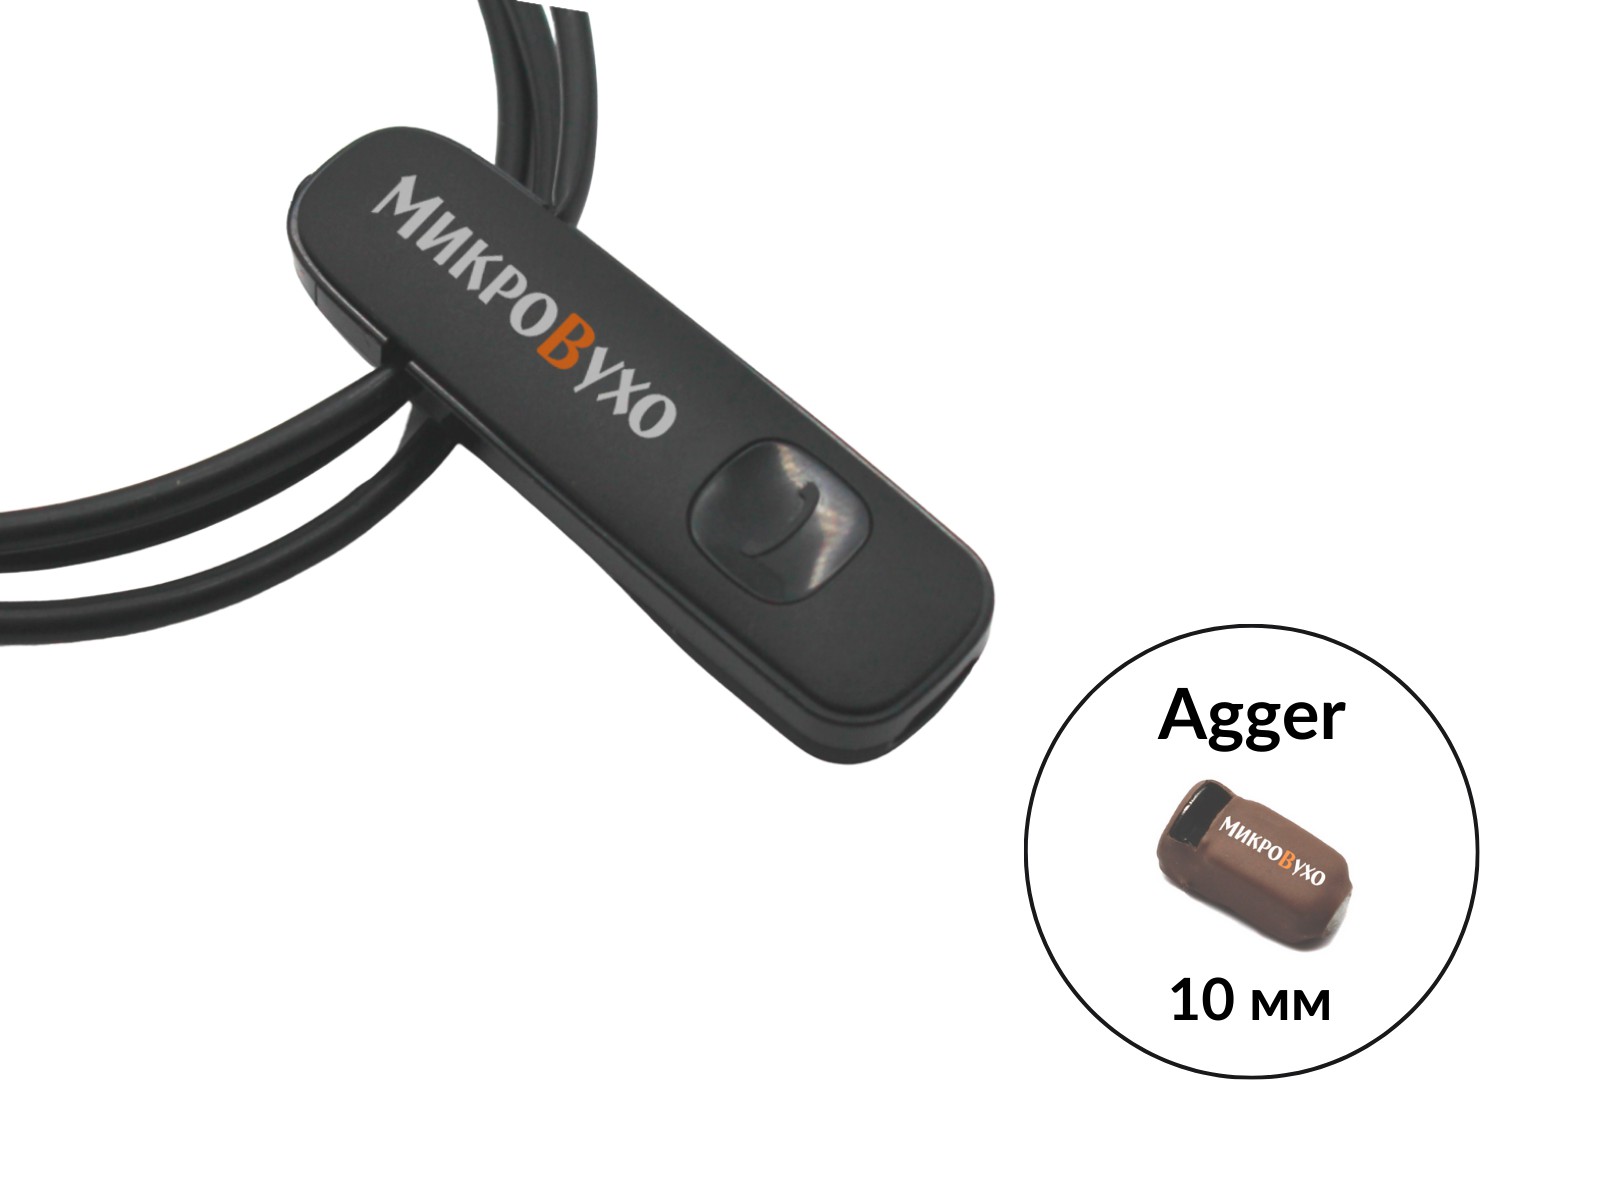 Гарнитура Bluetooth Plantronics с капсульным микронаушником Agger 10 мм - изображение 12